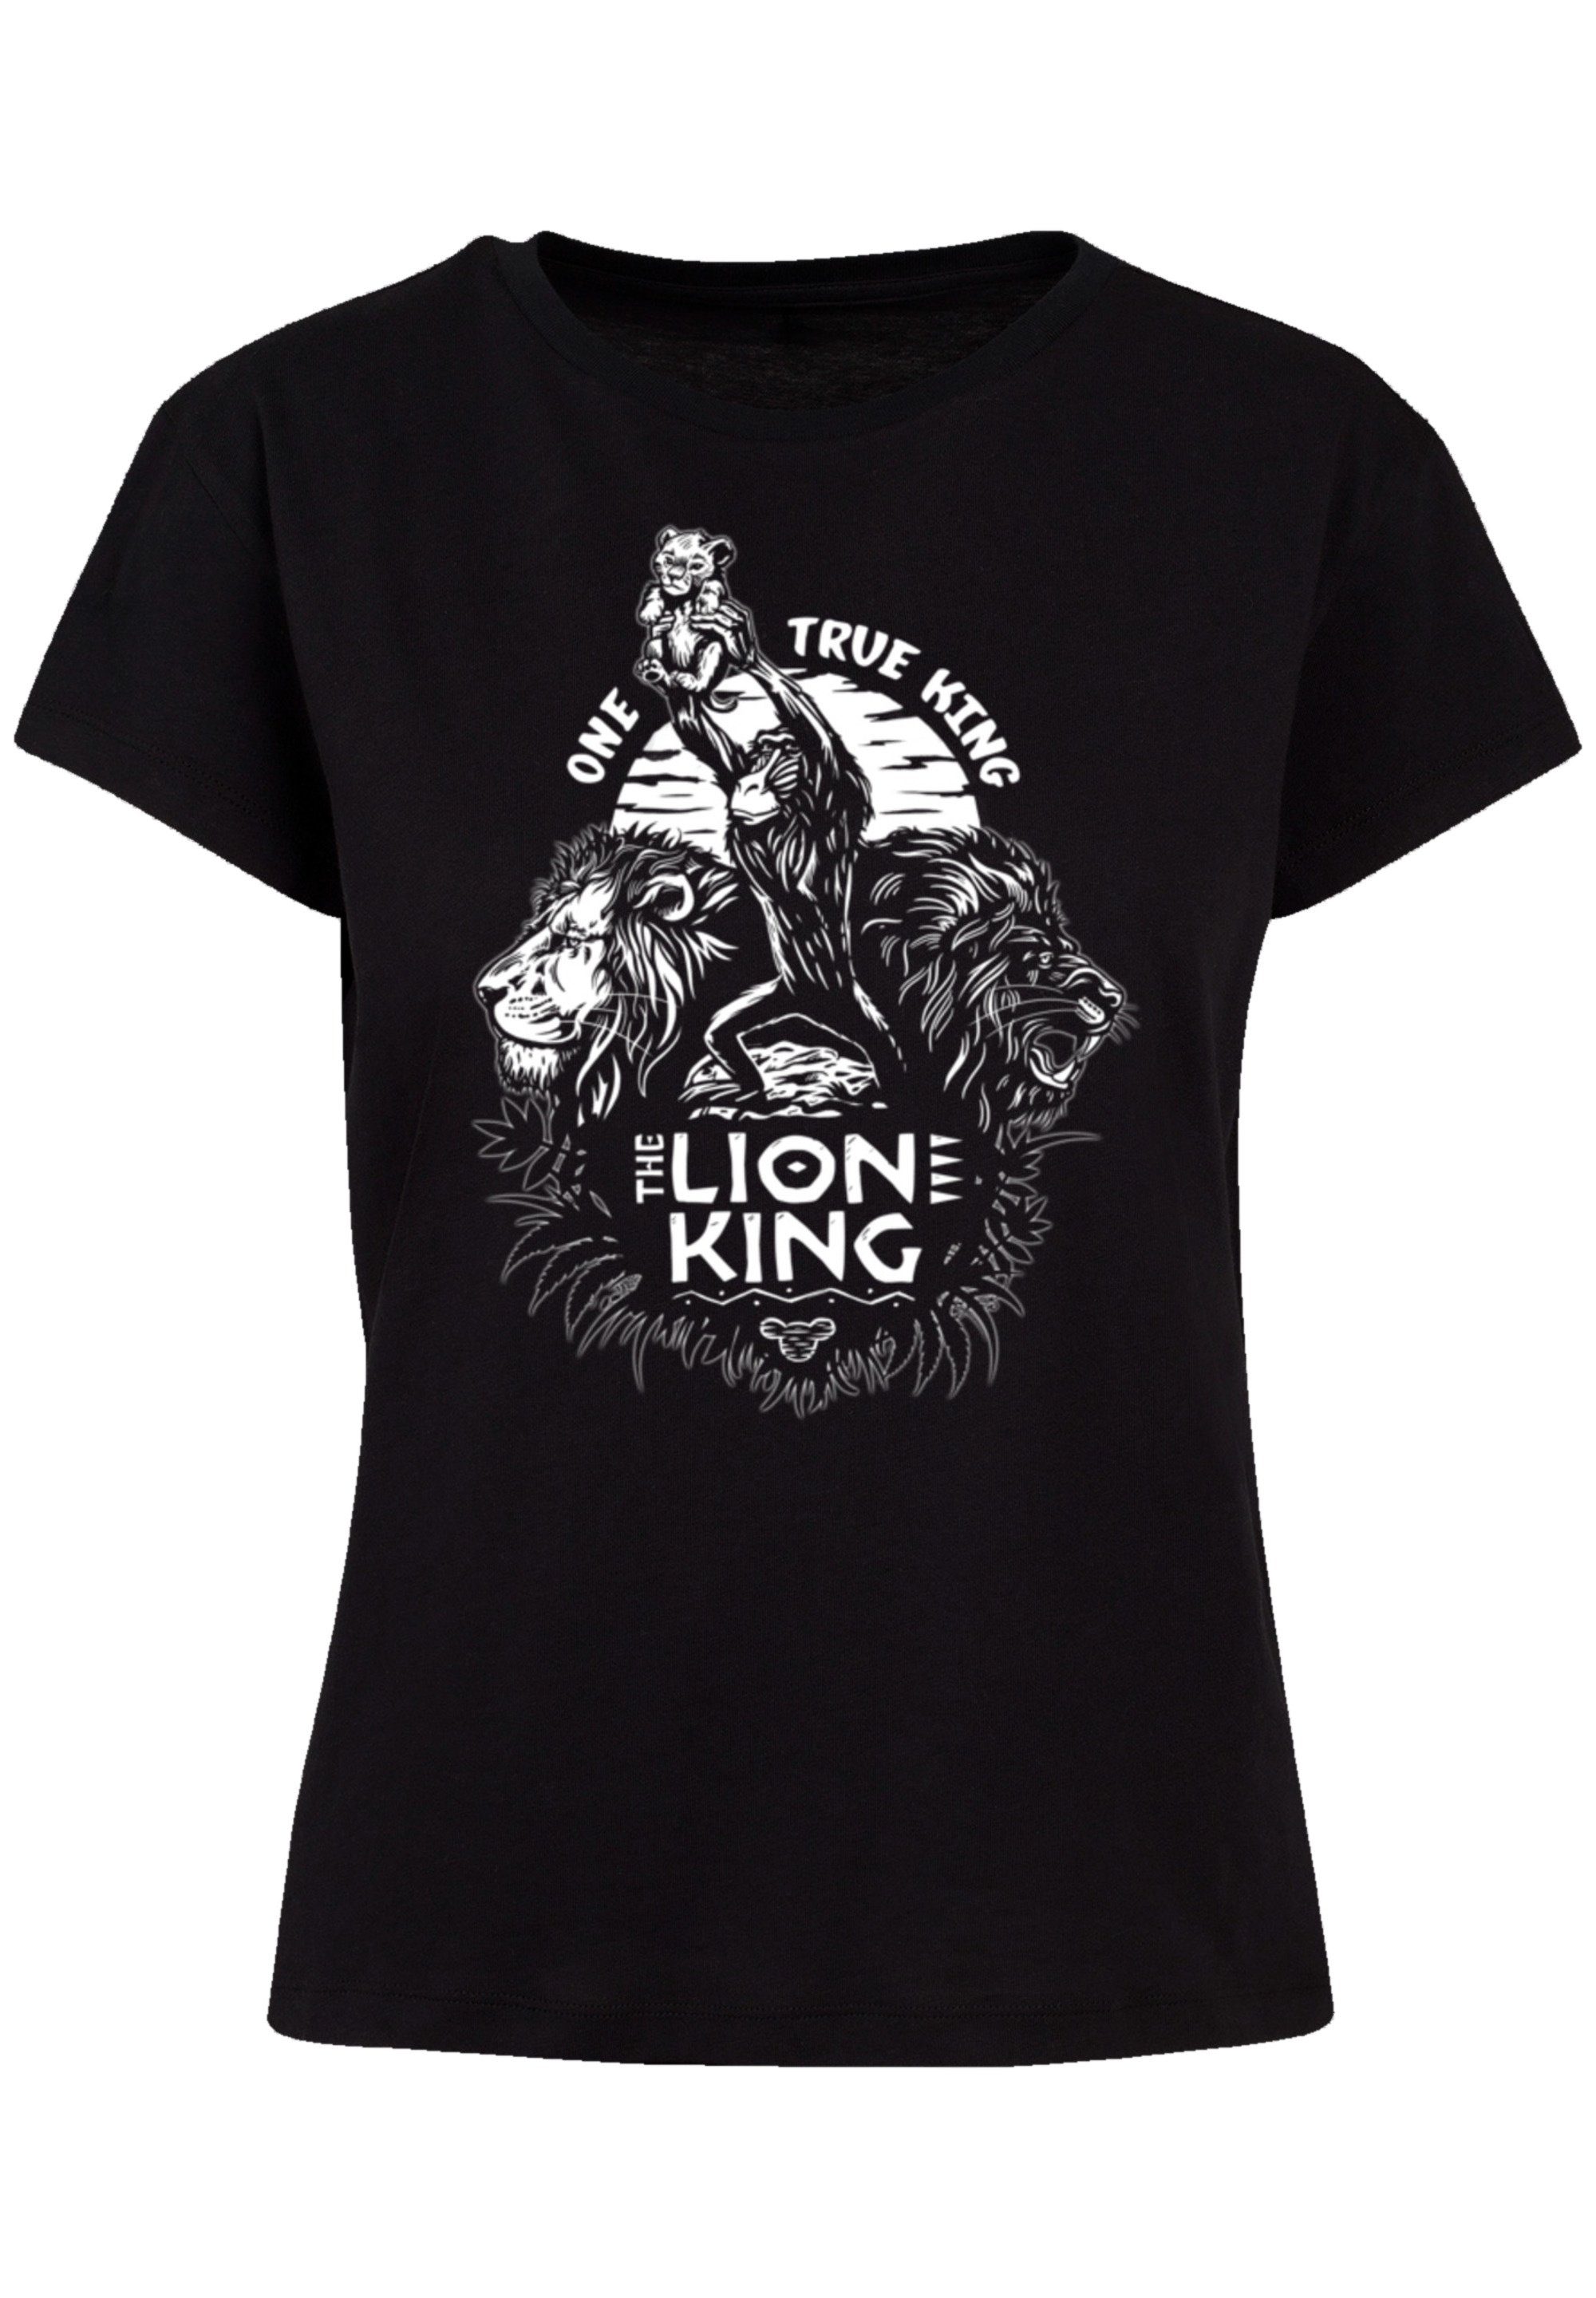 und Löwen Verarbeitung König King One F4NT4STIC T-Shirt Perfekte Disney Qualität, hochwertige Passform Premium der True